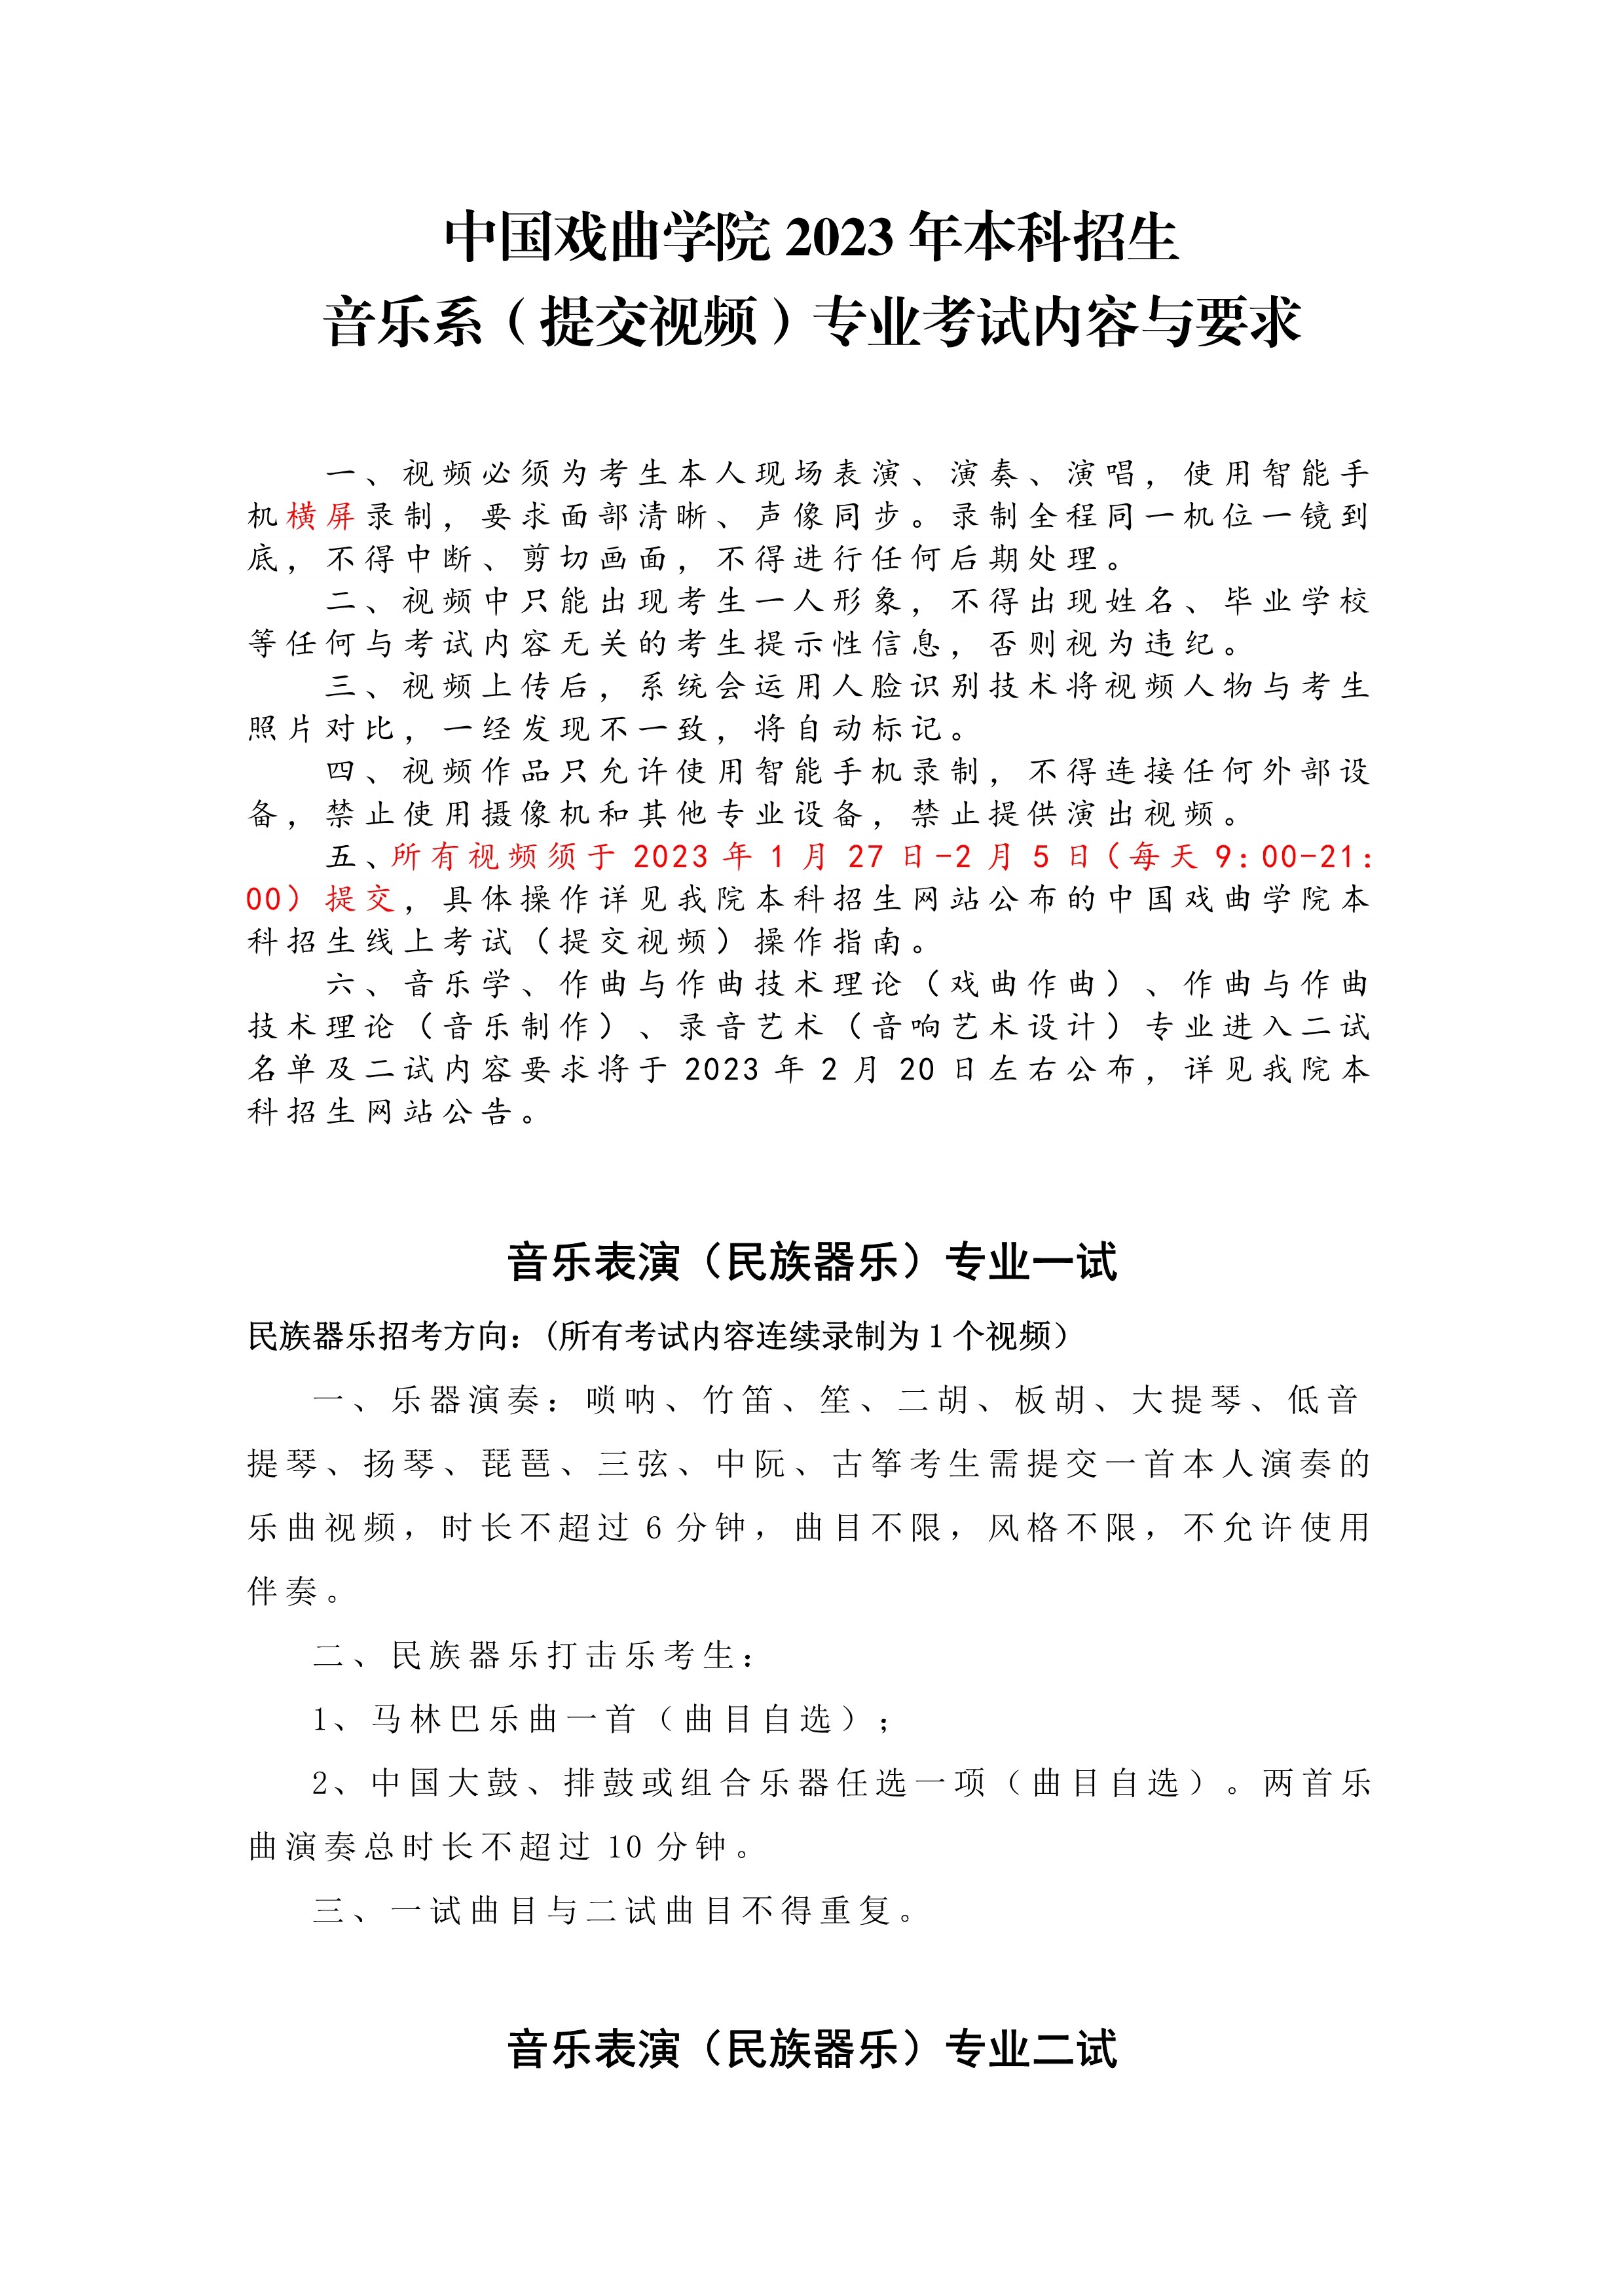 中国戏曲学院2023年本科招生音乐系（提交视频）专业考试内容与要求_1.jpg